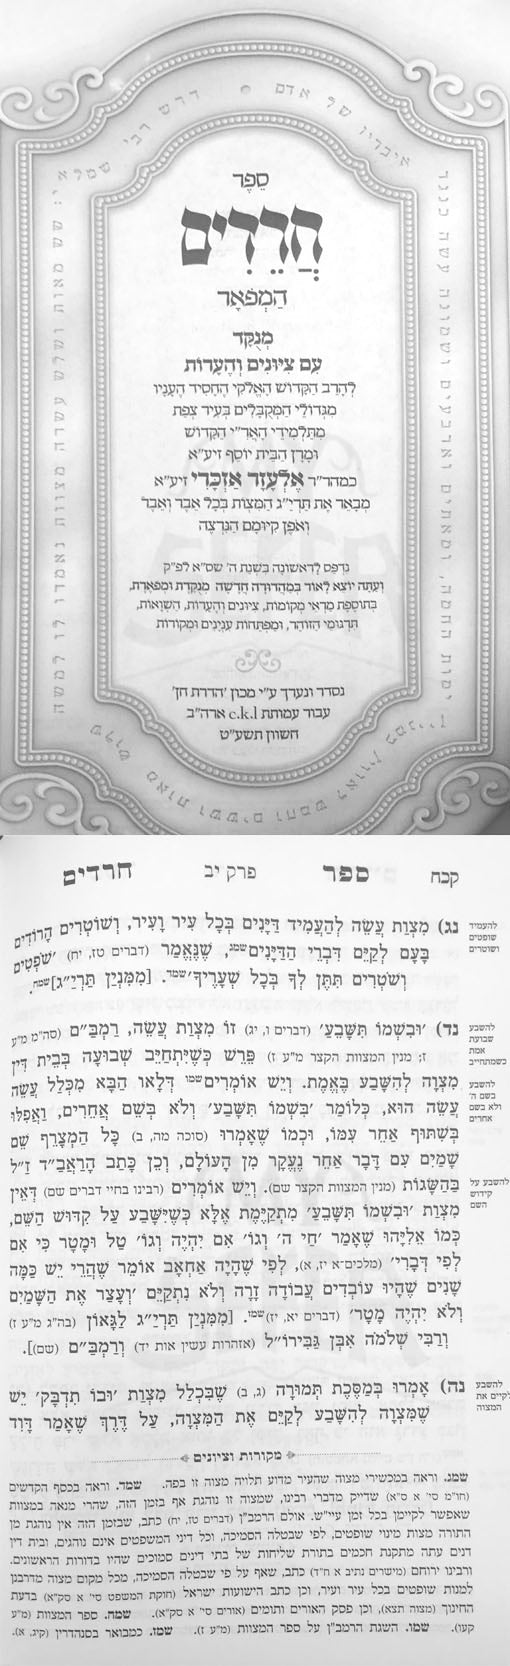 Sefer Charedim HaMeufar - Rabbi Elazar Azikri